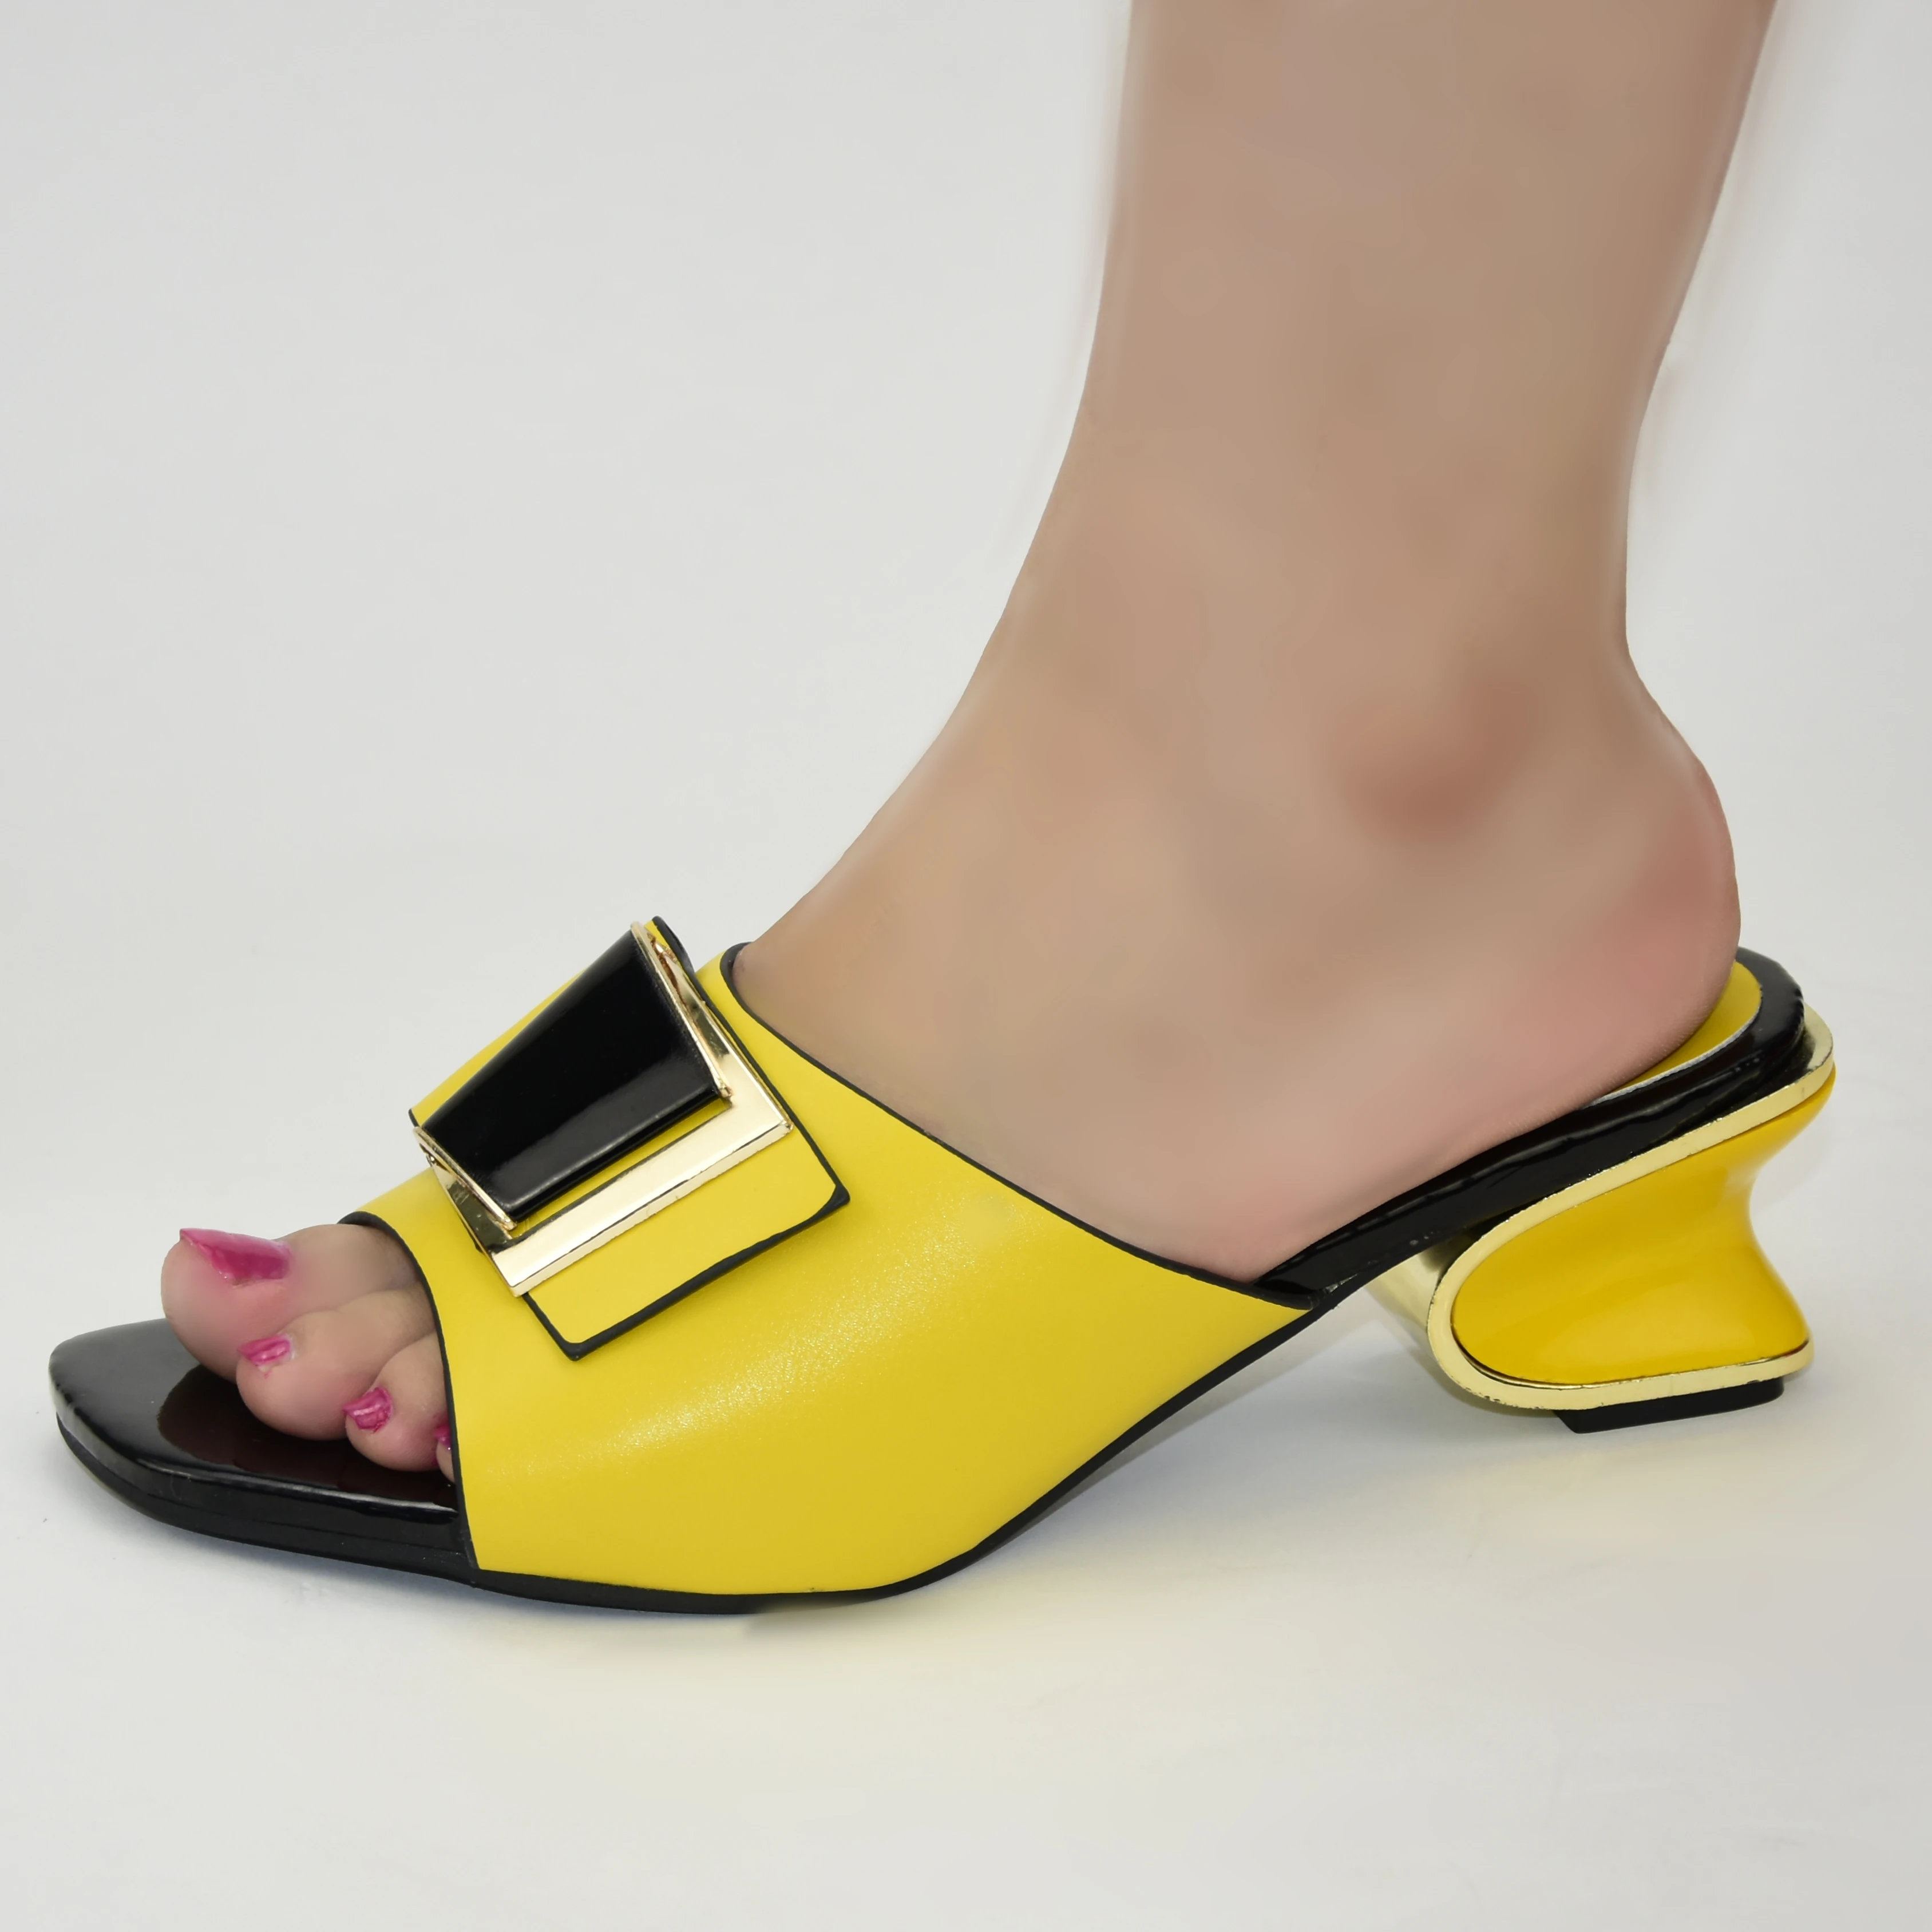 De Tacón Alto Italianos Para A La Moda,Novedad,2021 Buy Italiano Zapatos,Zapatos De Tacones Altos Para Las Mujeres,Zapatillas Mujer Zapatillas Product on Alibaba.com